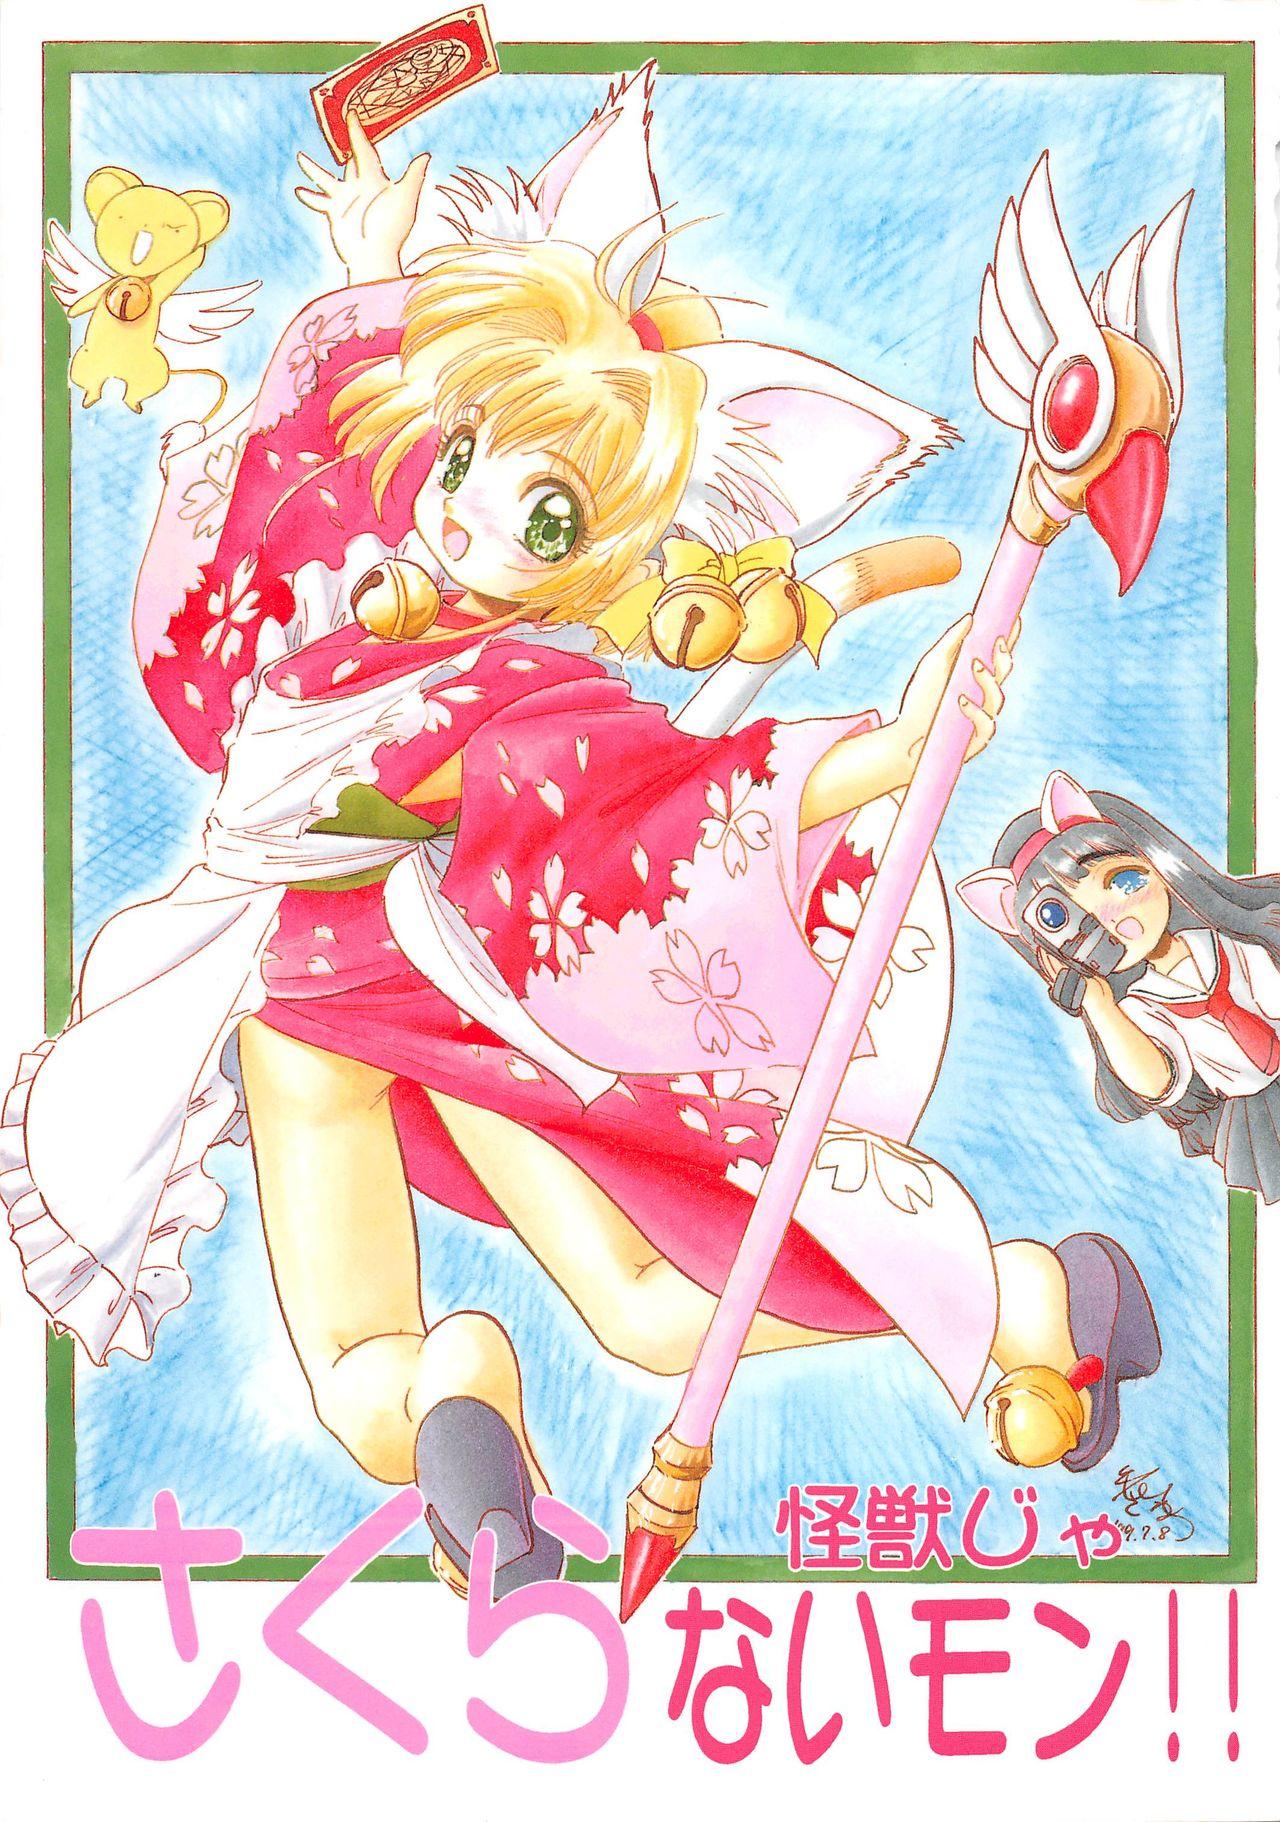 Lolicon Sakura Kaijuu Janai Mon!! - Cardcaptor sakura Sakura taisen Staxxx - Picture 1